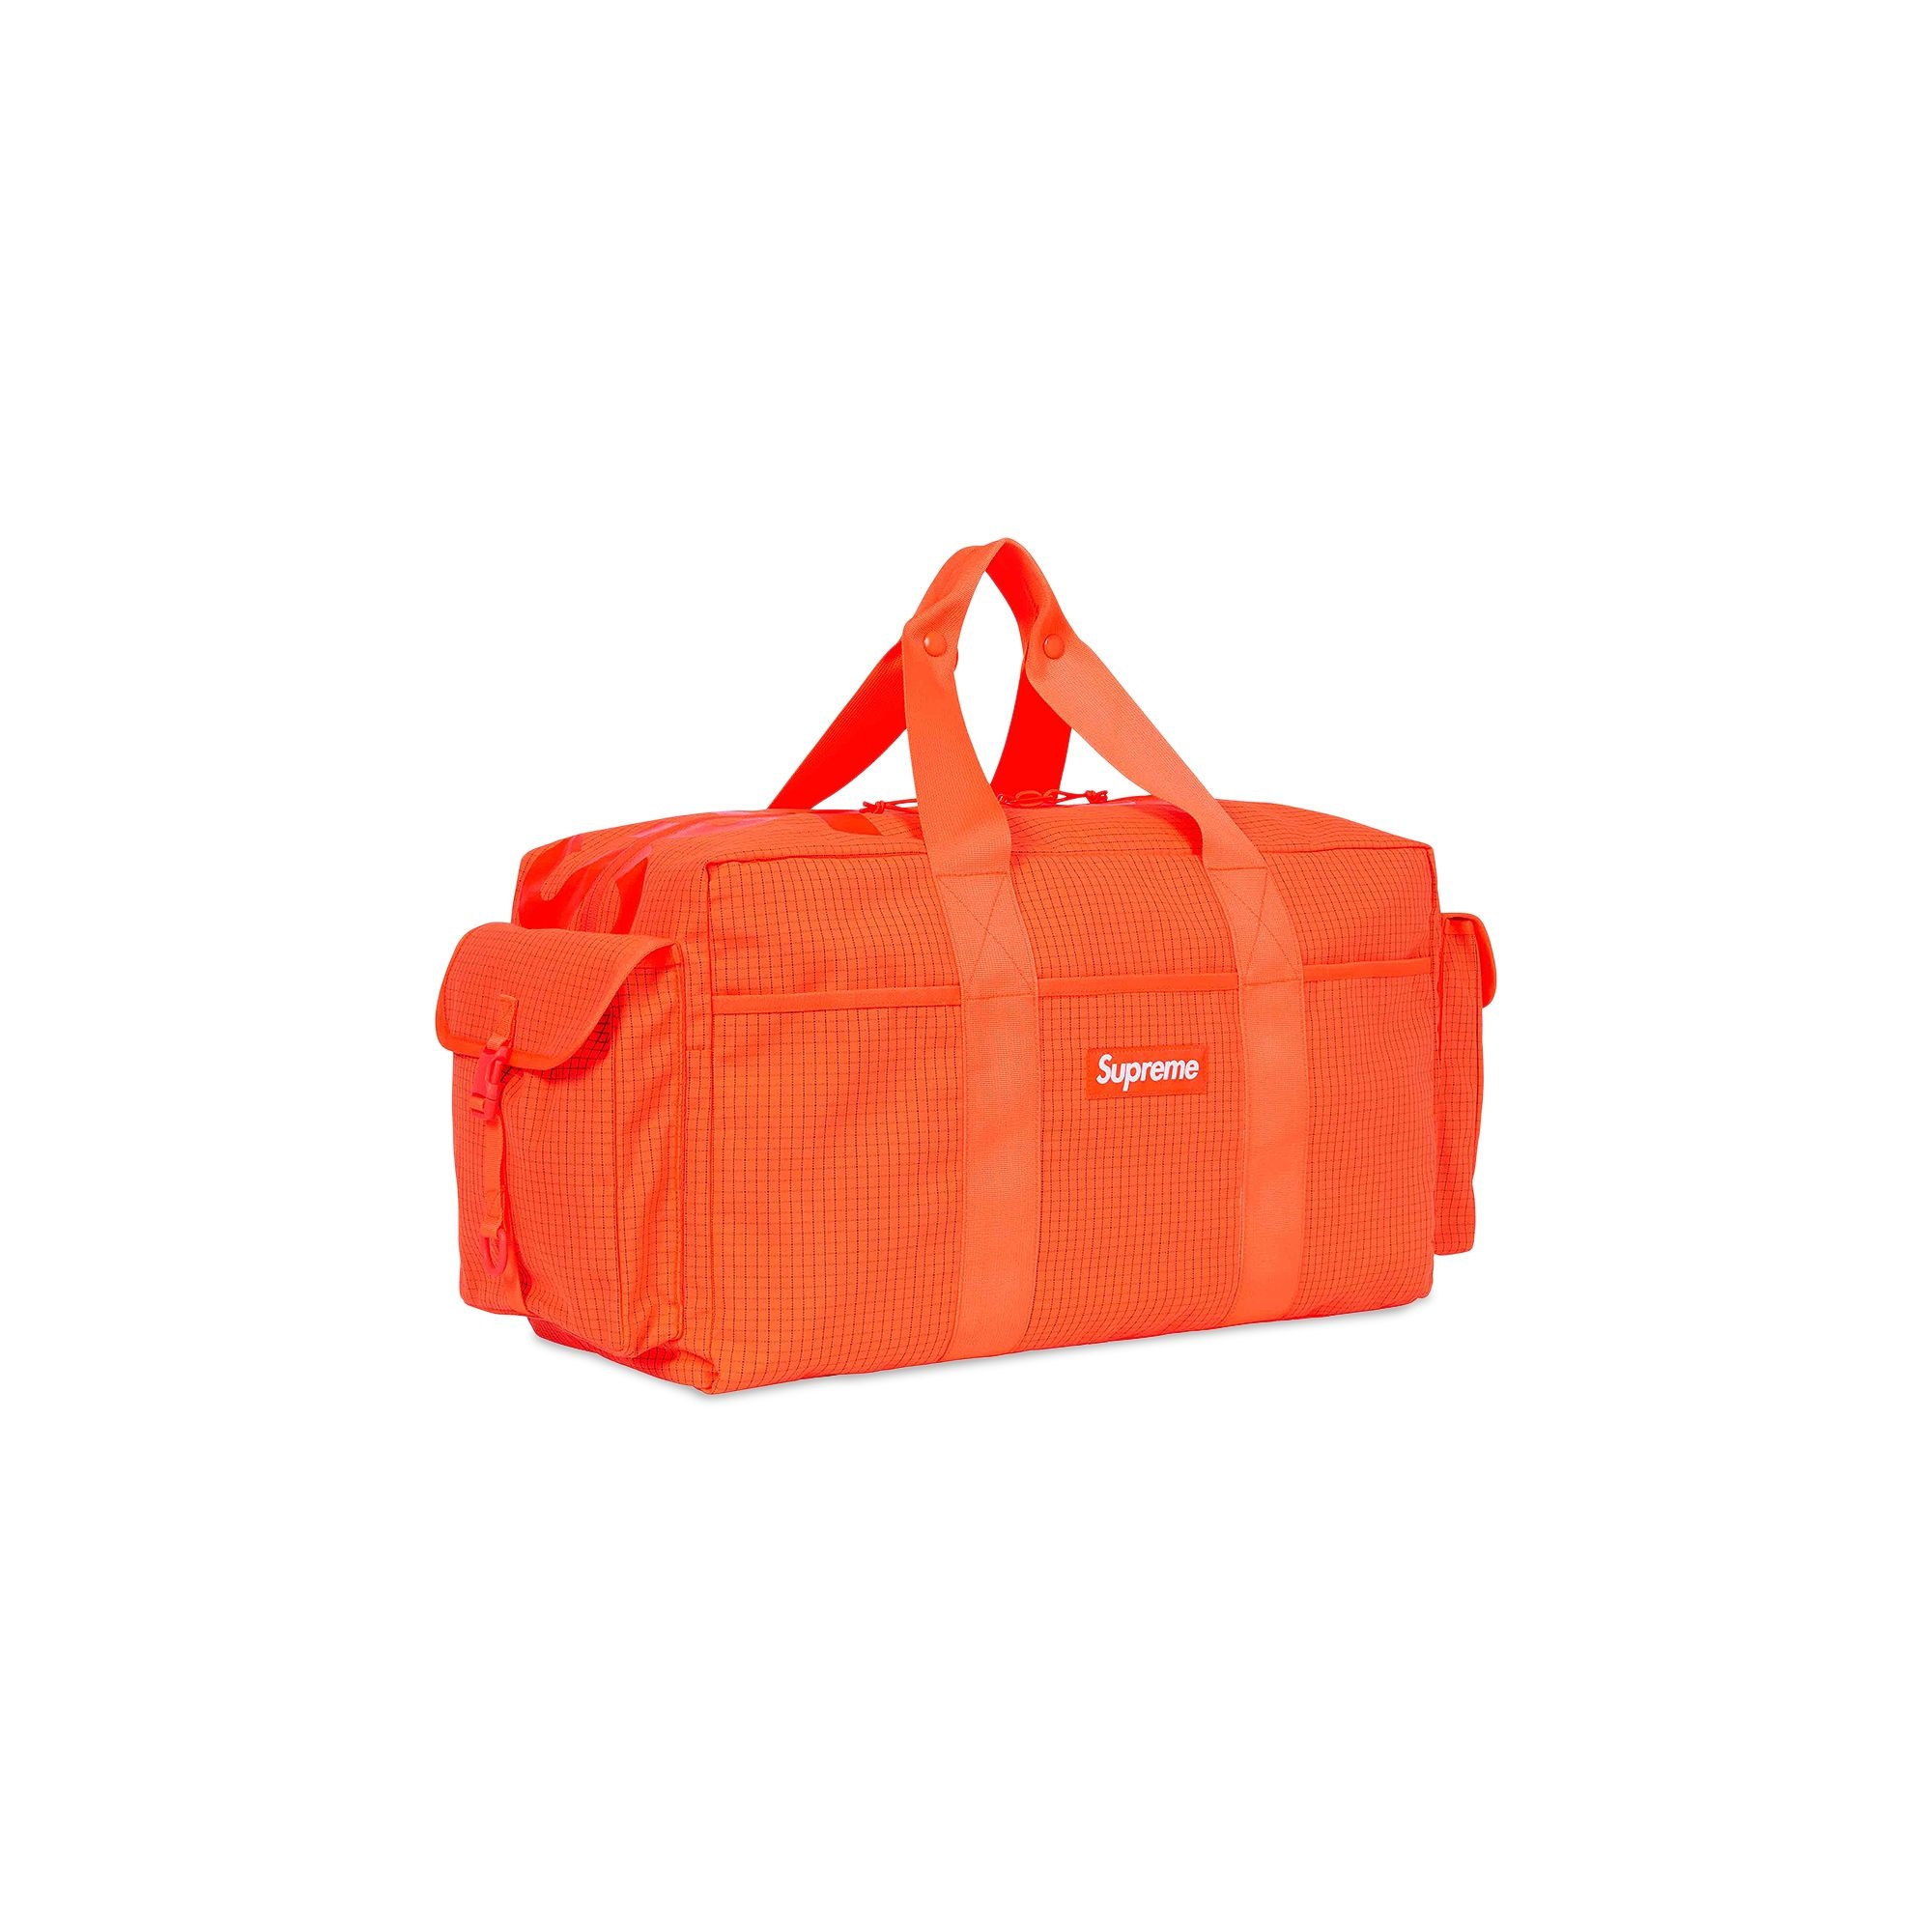 Supreme Duffle Bag 'Orange' - 3